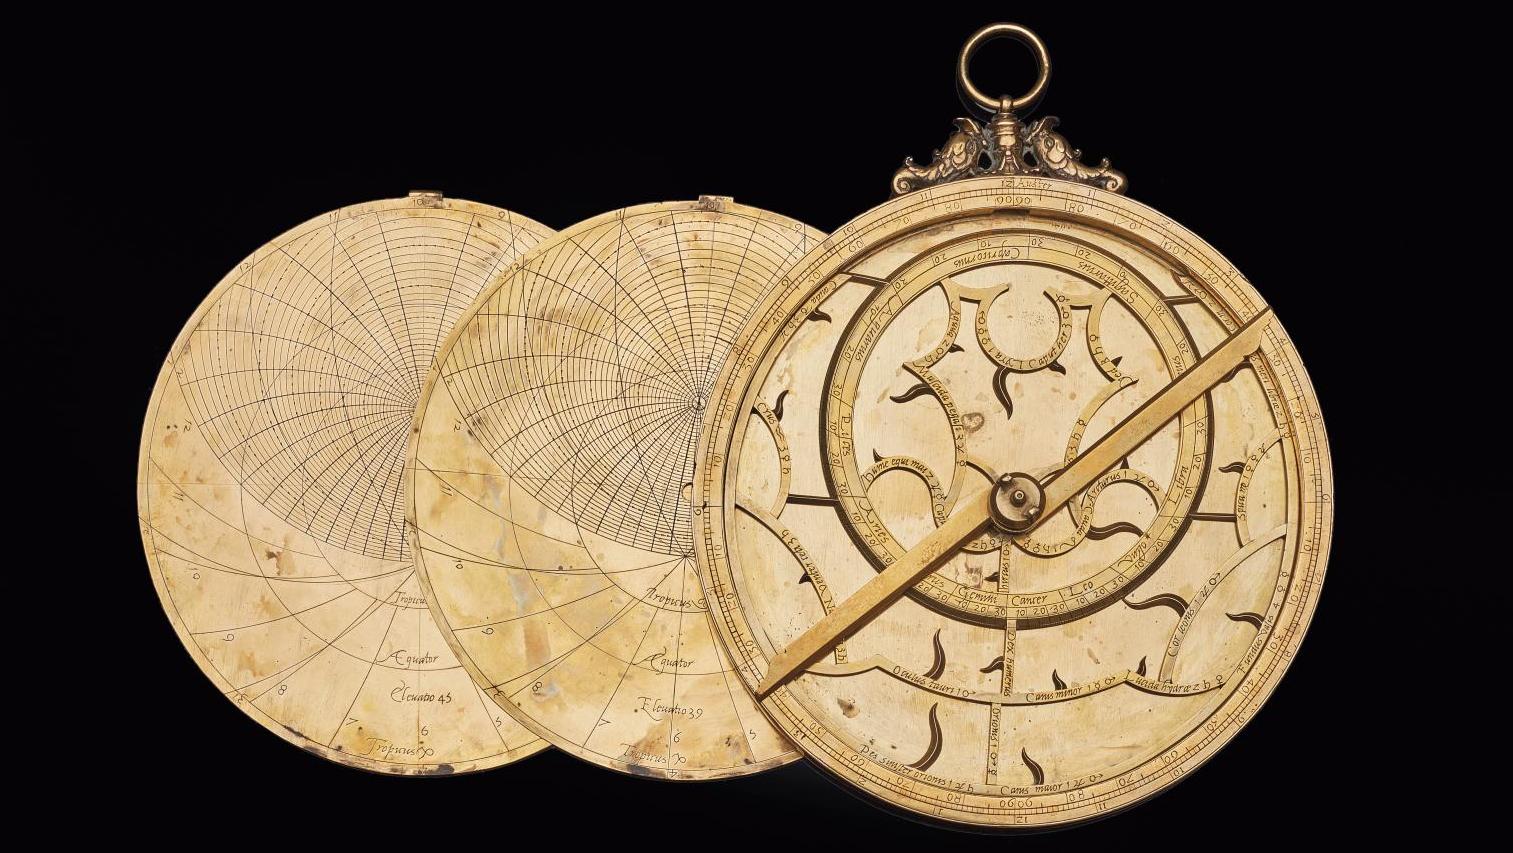 Astrolabe européen en laiton doré attribué à Michael Piquer, daté 1543, diam. 19,1 cm,... Un astrolabe du XVIe siècle placé sous une bonne étoile